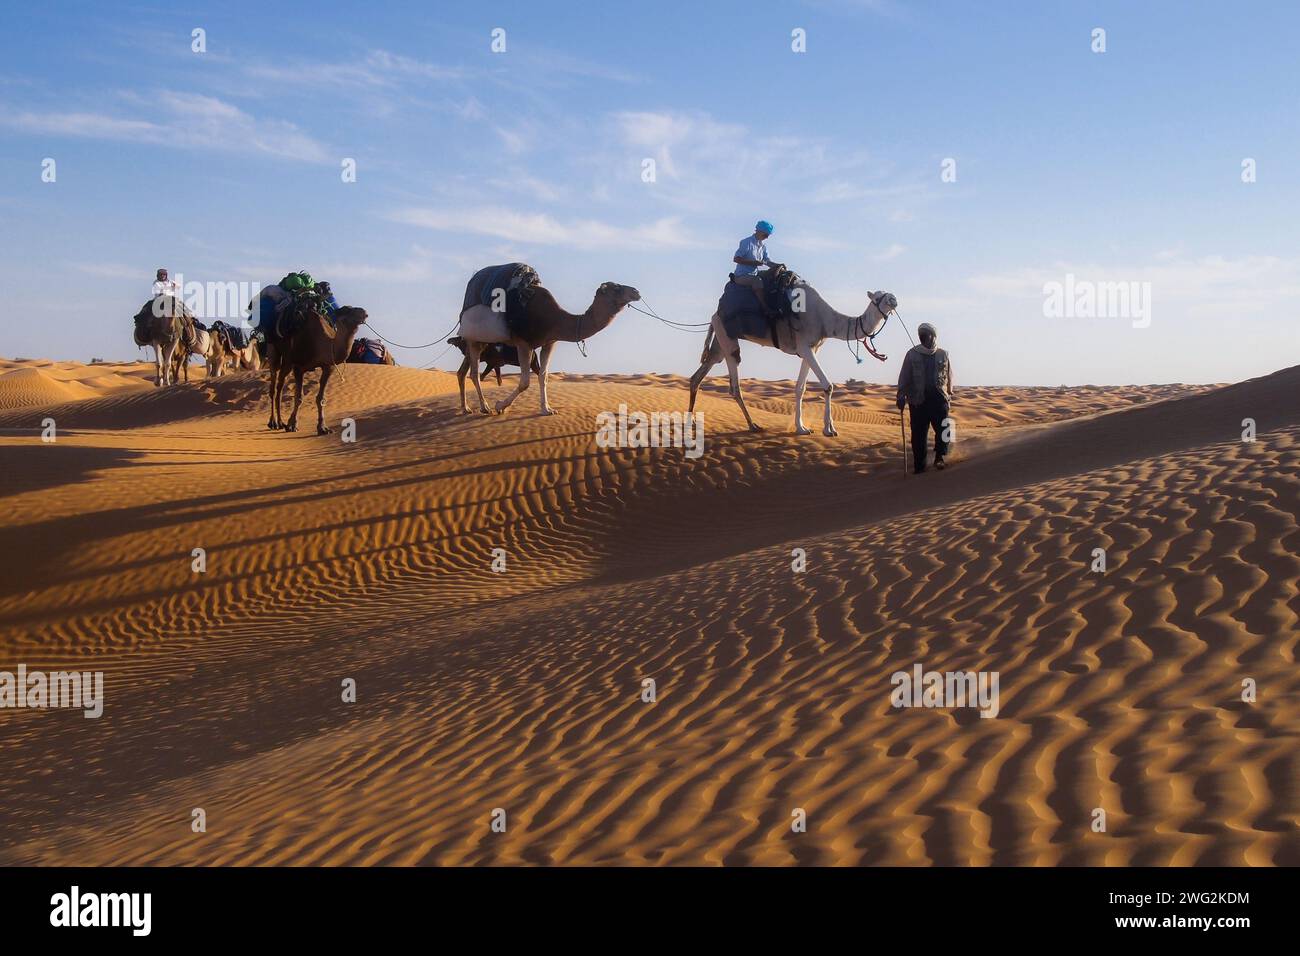 camel caravan on dunes in sahara at evening sun Stock Photo